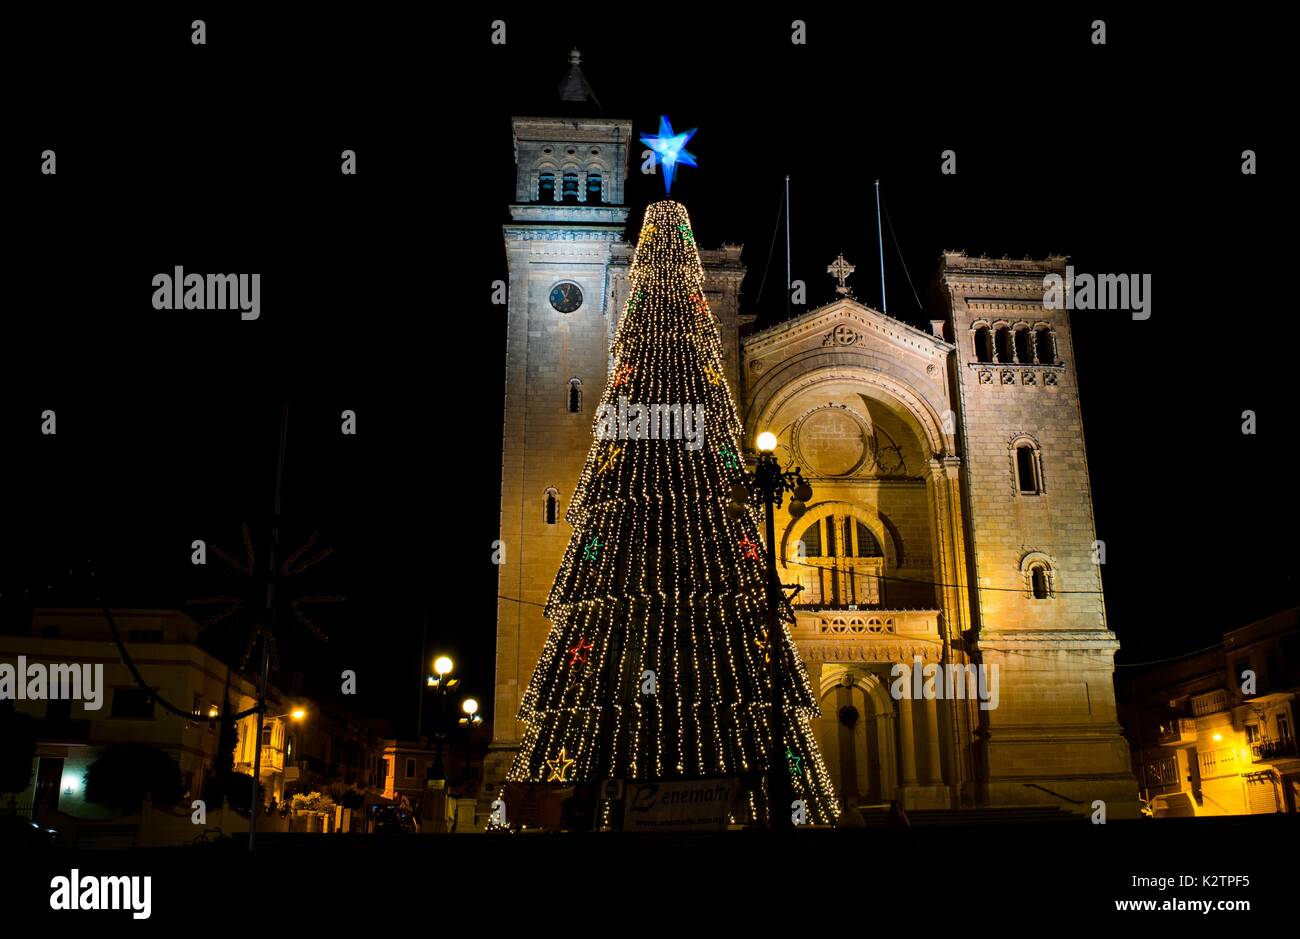 Ein stiller Tag des Neuen Jahres Nacht im kleinen Dorf von Birzebbuga, Malta, nach dem Ende der Weihnachtsfeier, durch einen riesigen Weihnachtsbaum dekoriert. Stockfoto